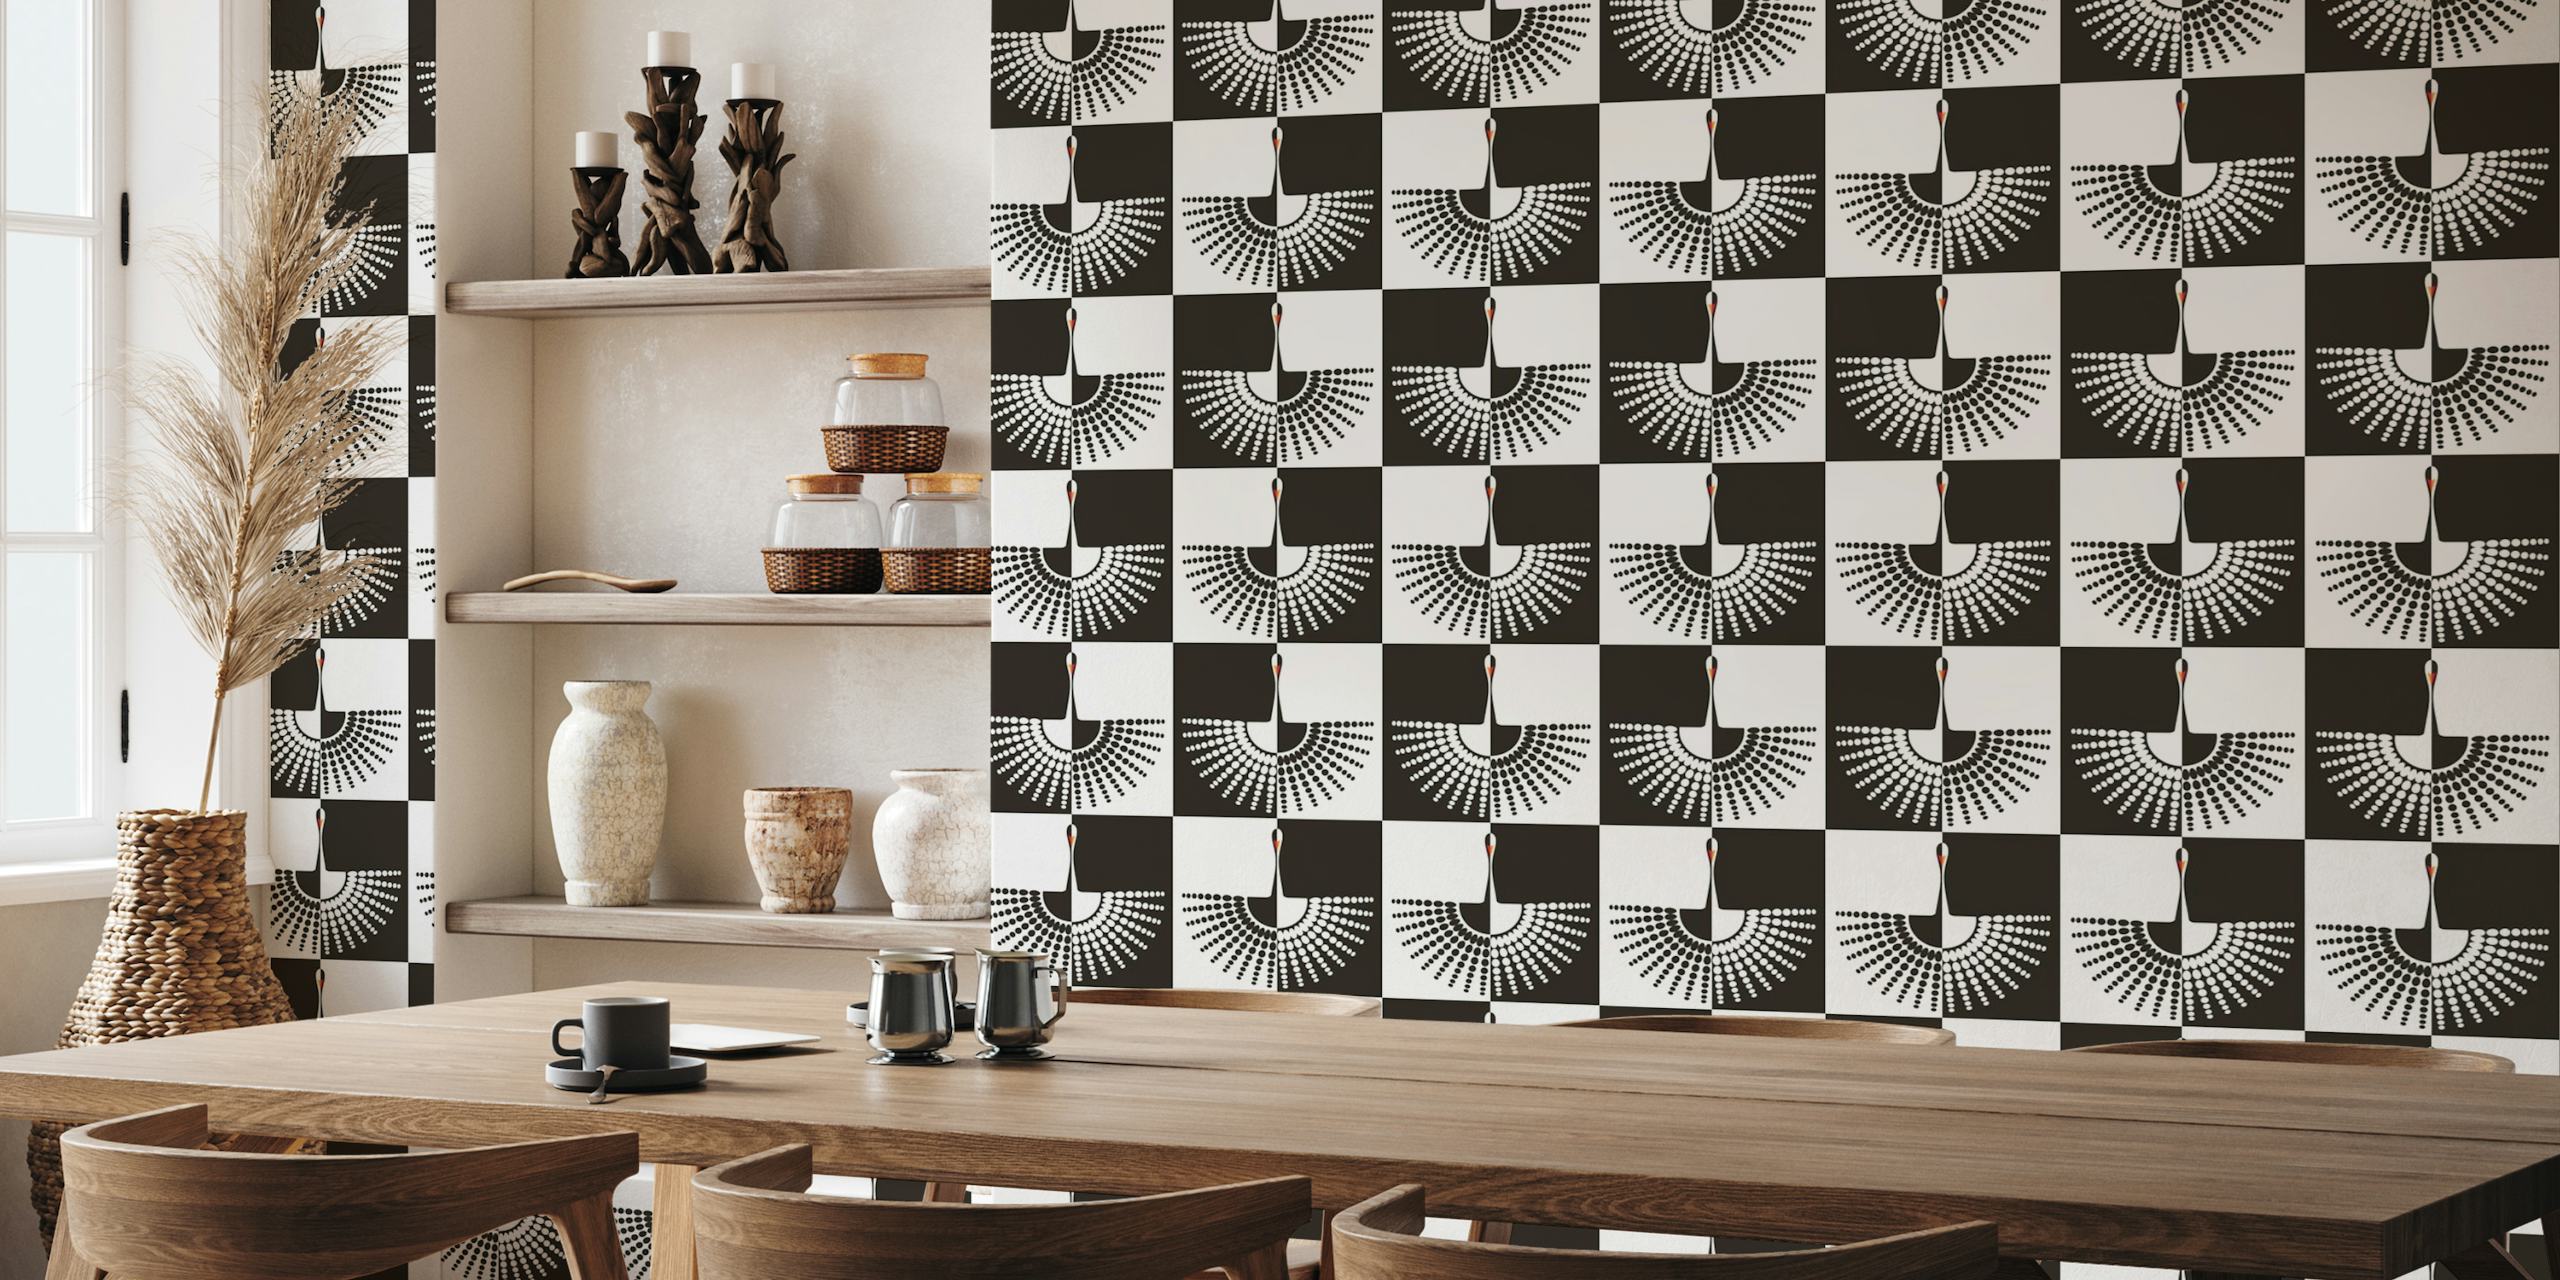 Checkered Swan papel pintado